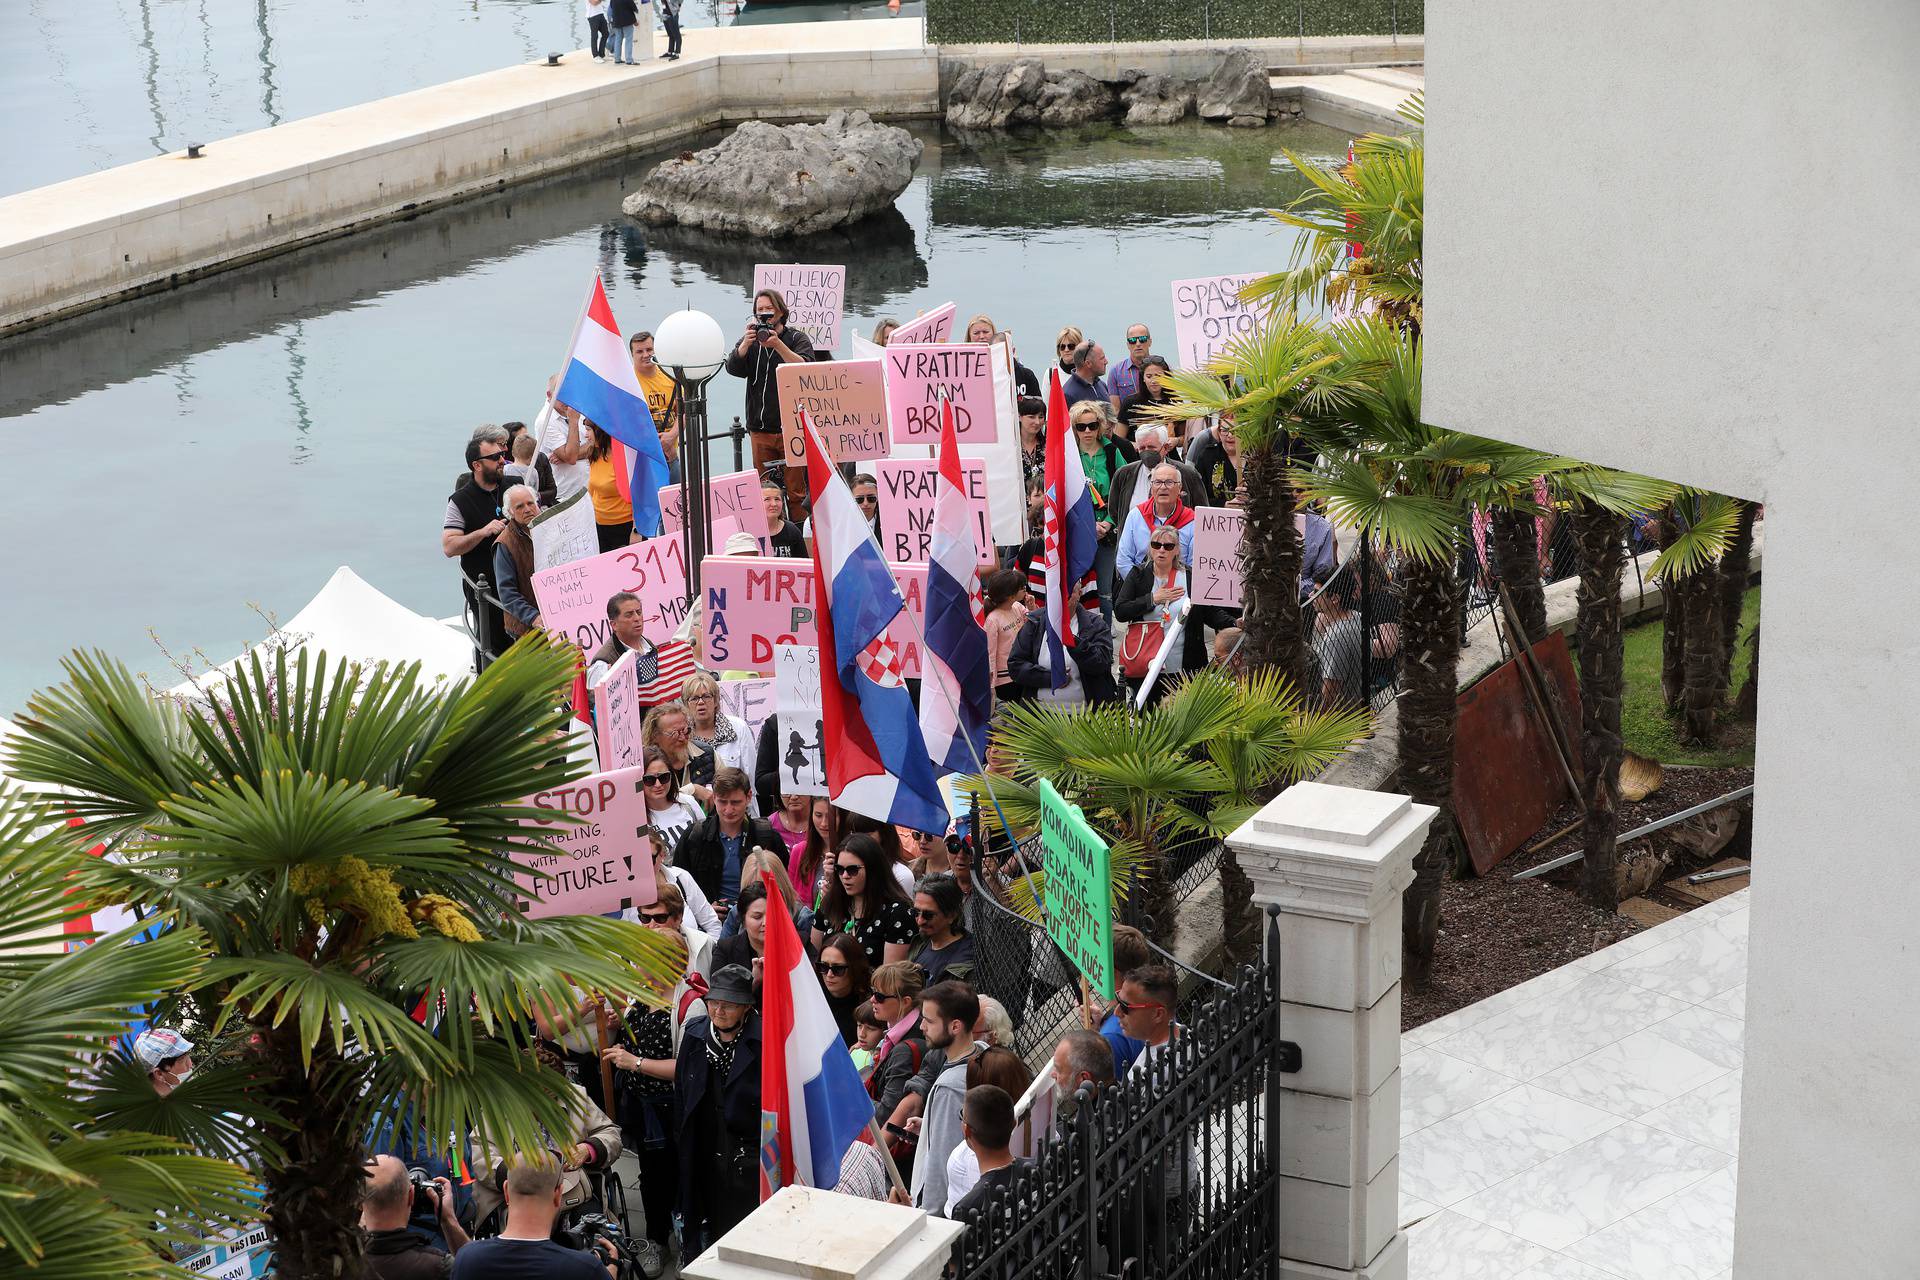 Prosvjed građana Ilovika i Lošinja zbog izgradnje luke Mrtvaška na otoku Lošinju